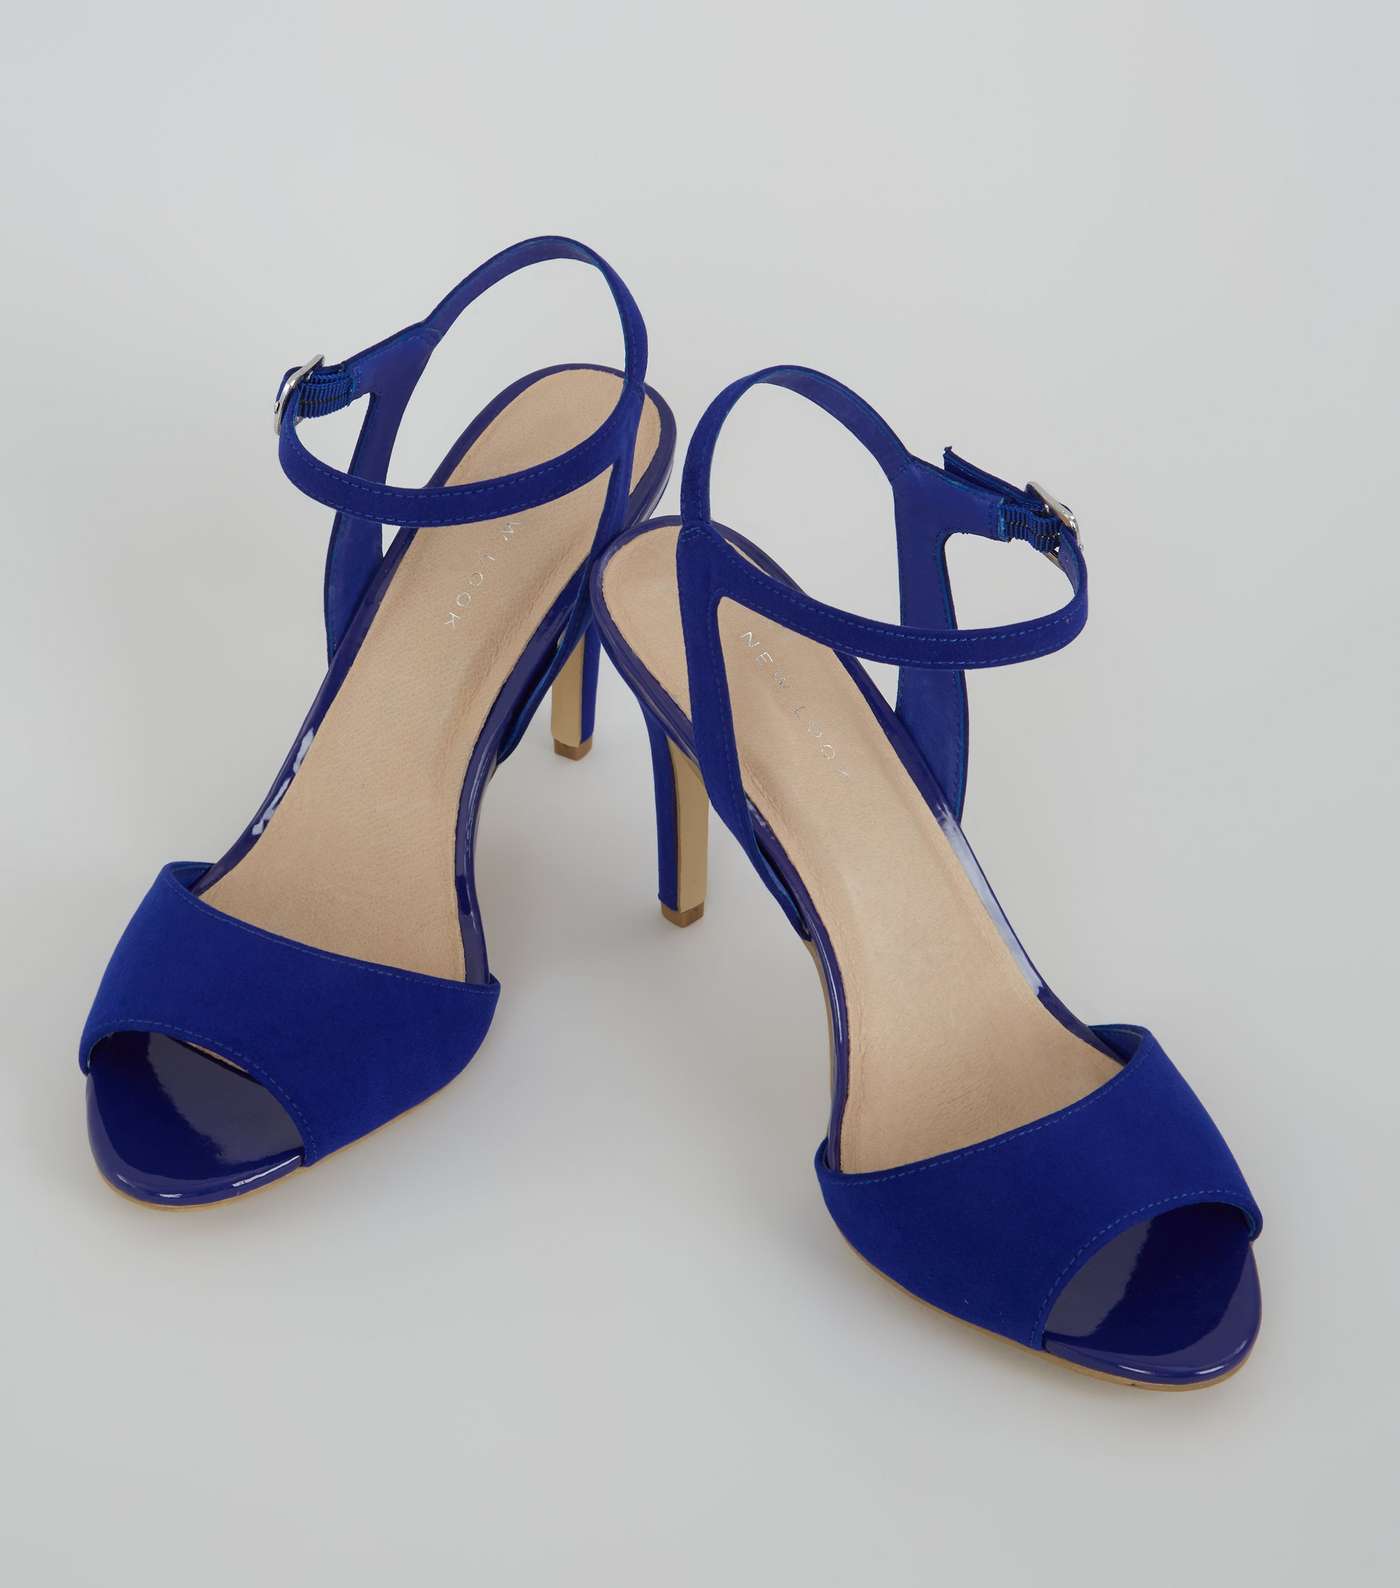 Blue Comfort Suedette Ankle Strap Heels Image 4